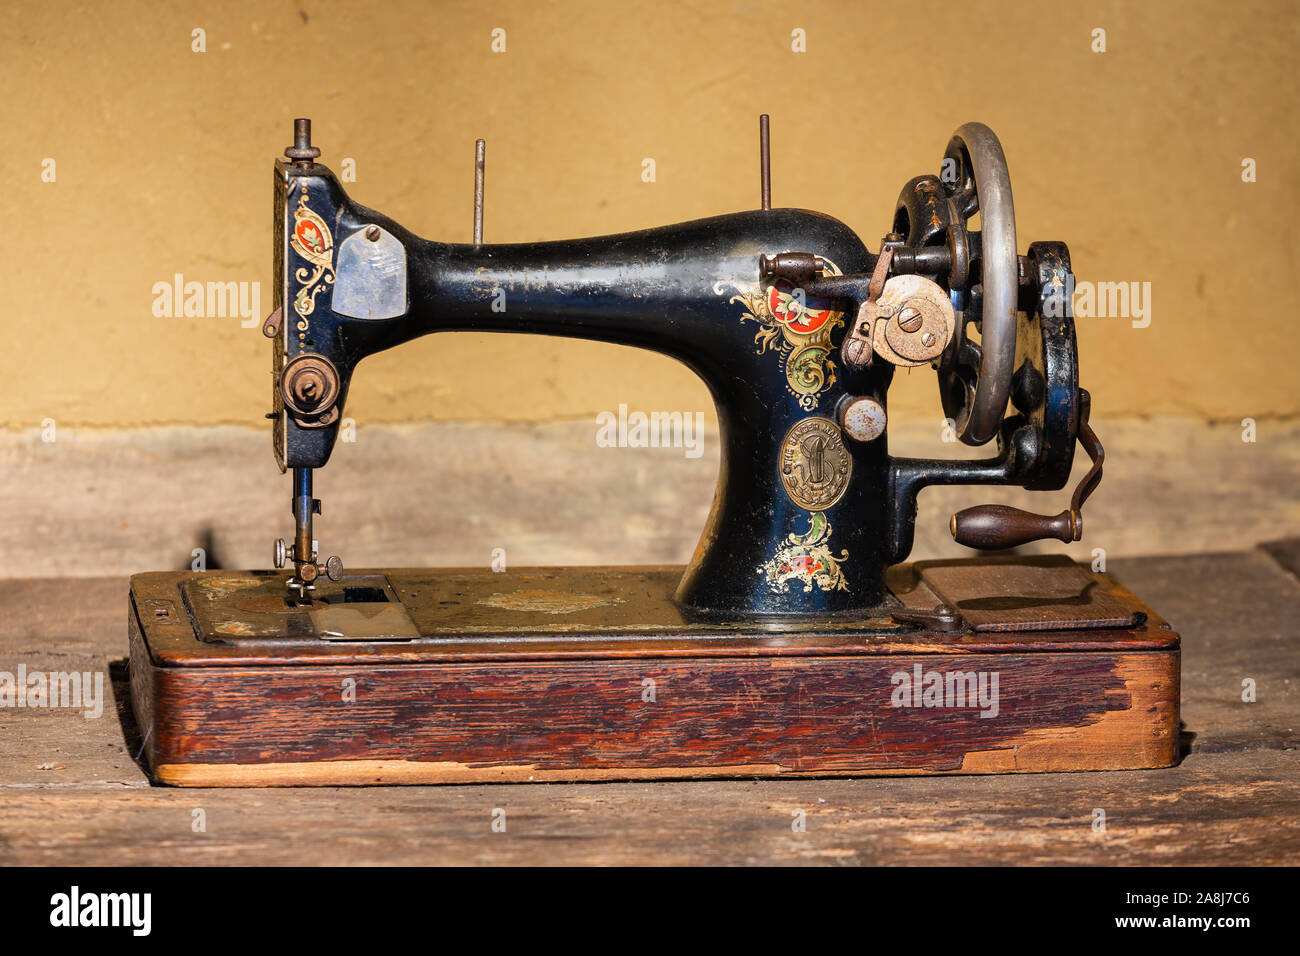 Musée agricole néerlandaise avec l'ancienne machine à coudre Singer Banque D'Images